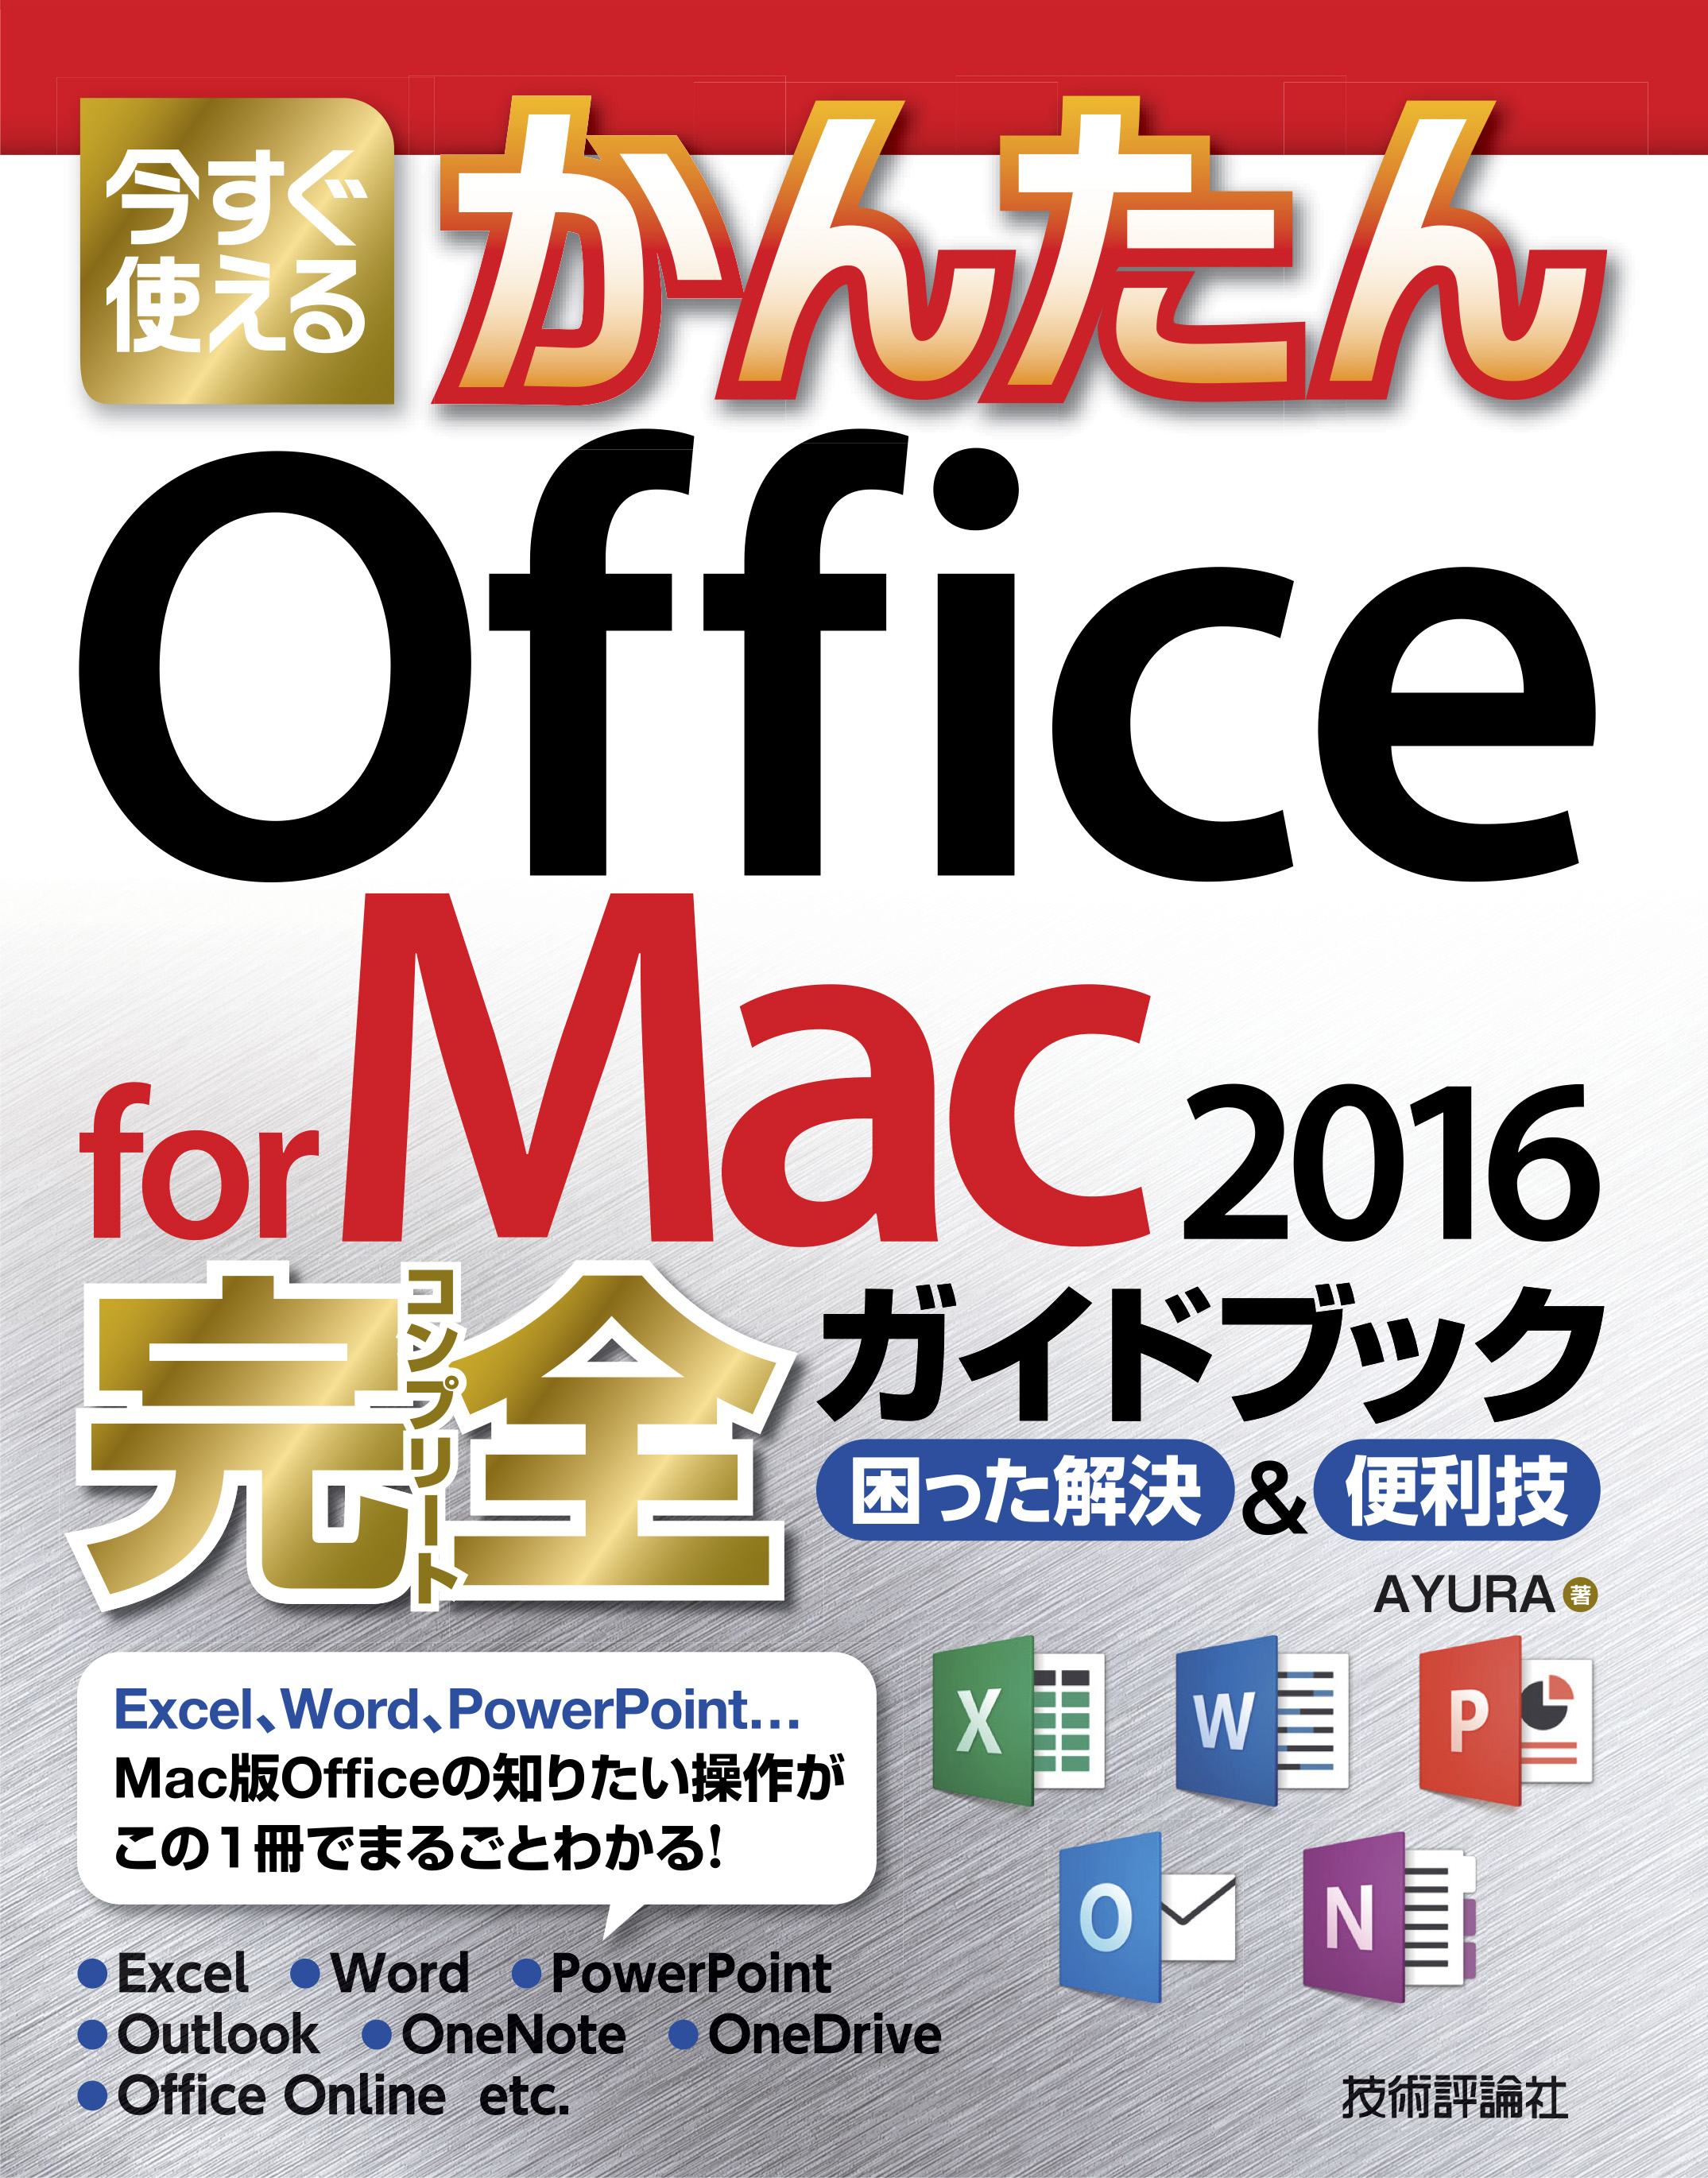 今すぐ使えるかんたん Office for Mac 2016完全ガイドブック - AYURA ...